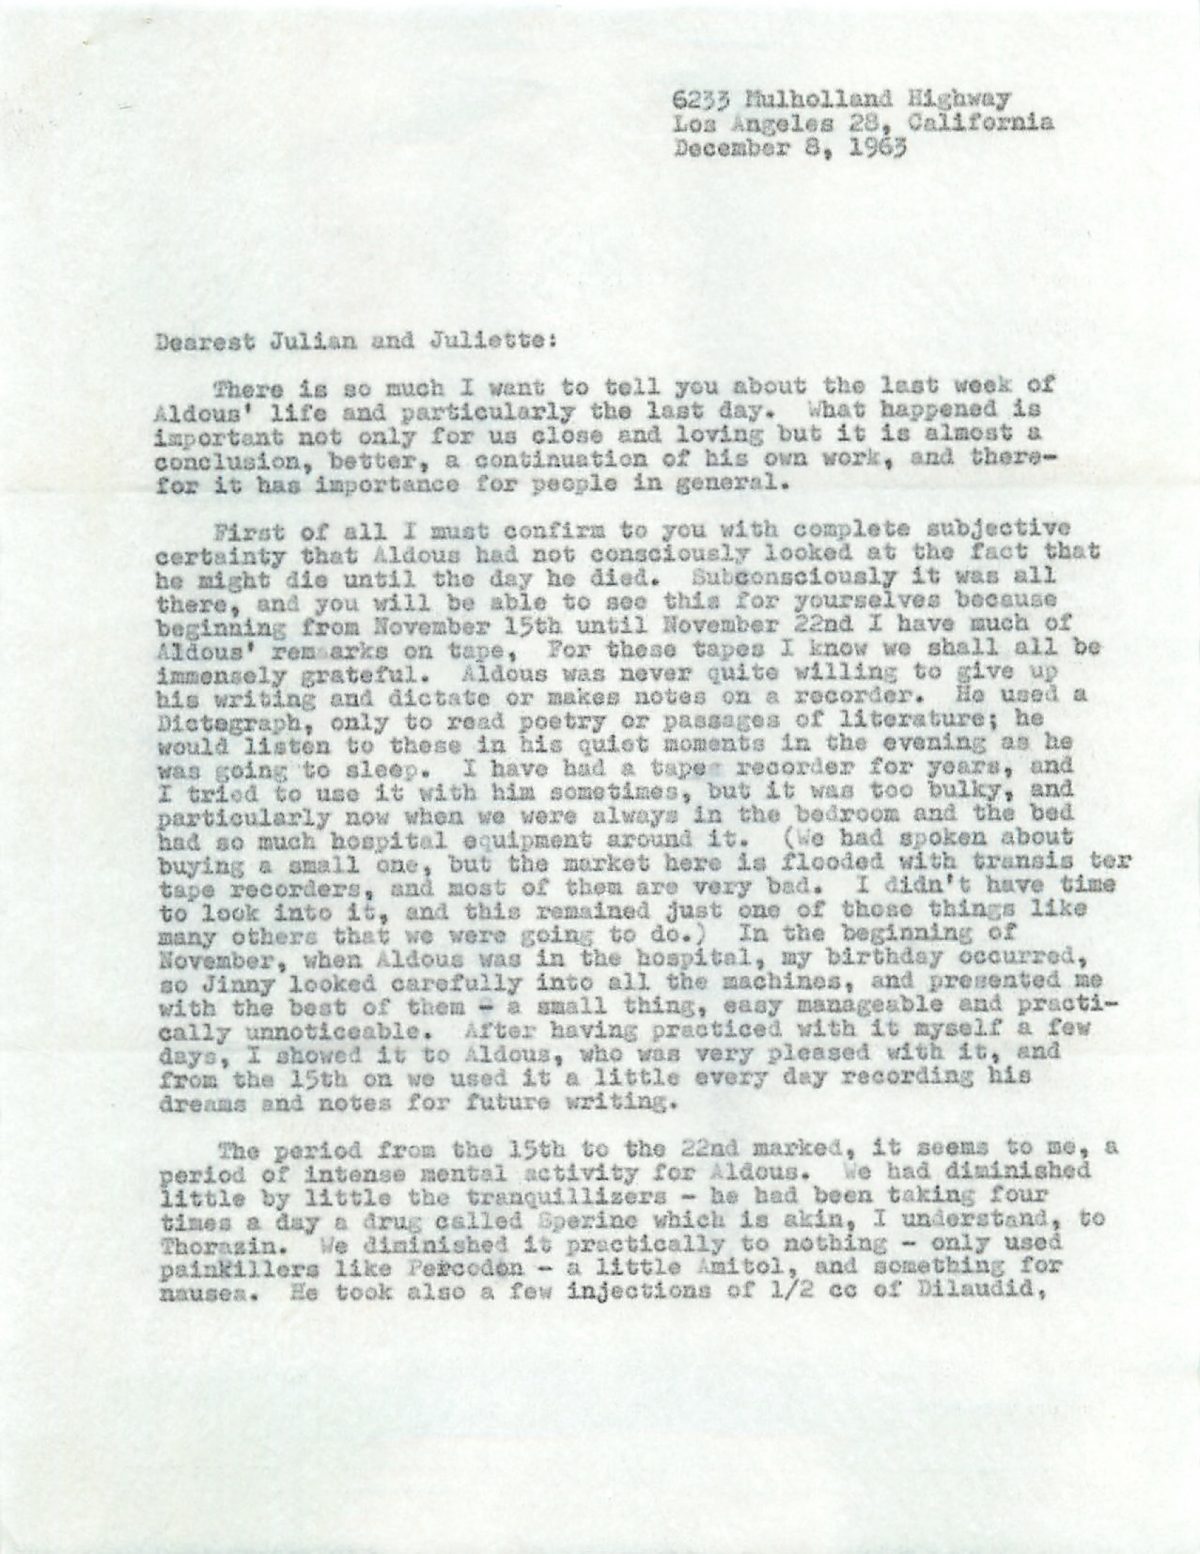 Laura Huxley letter on dying Aldous Huxley on LSD